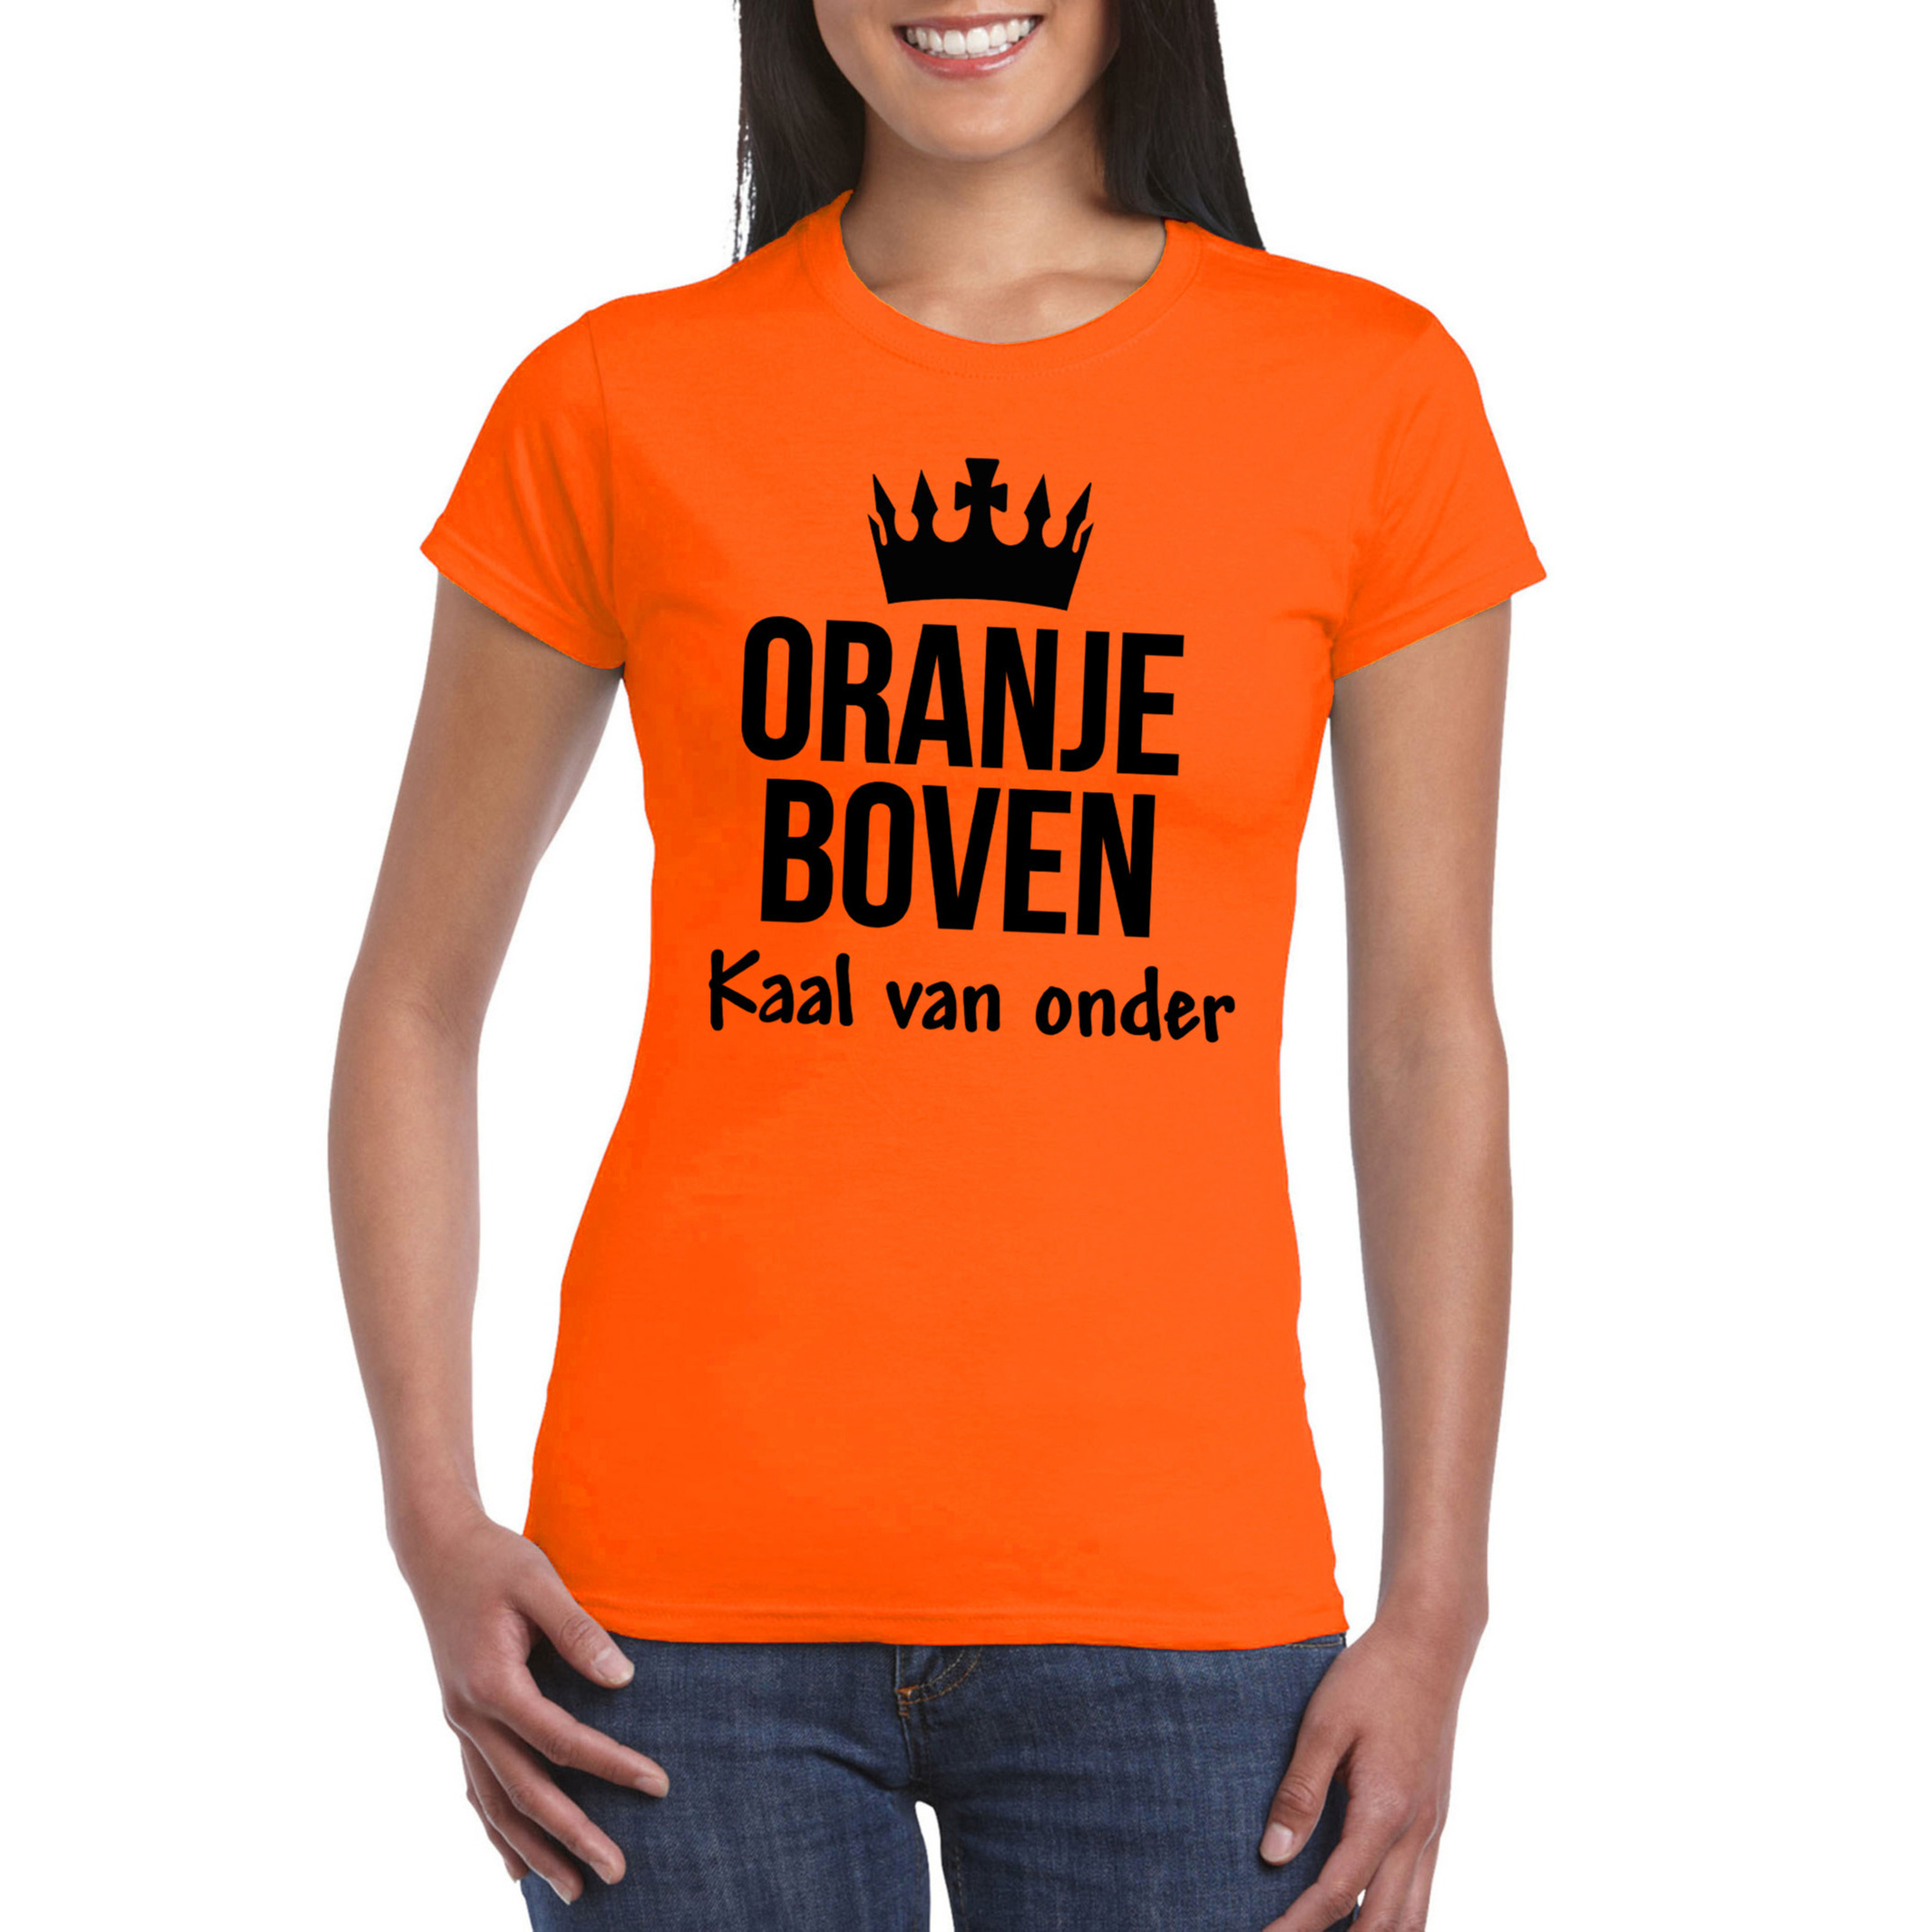 Koningsdag T-shirt Oranje boven kaal van onder dames